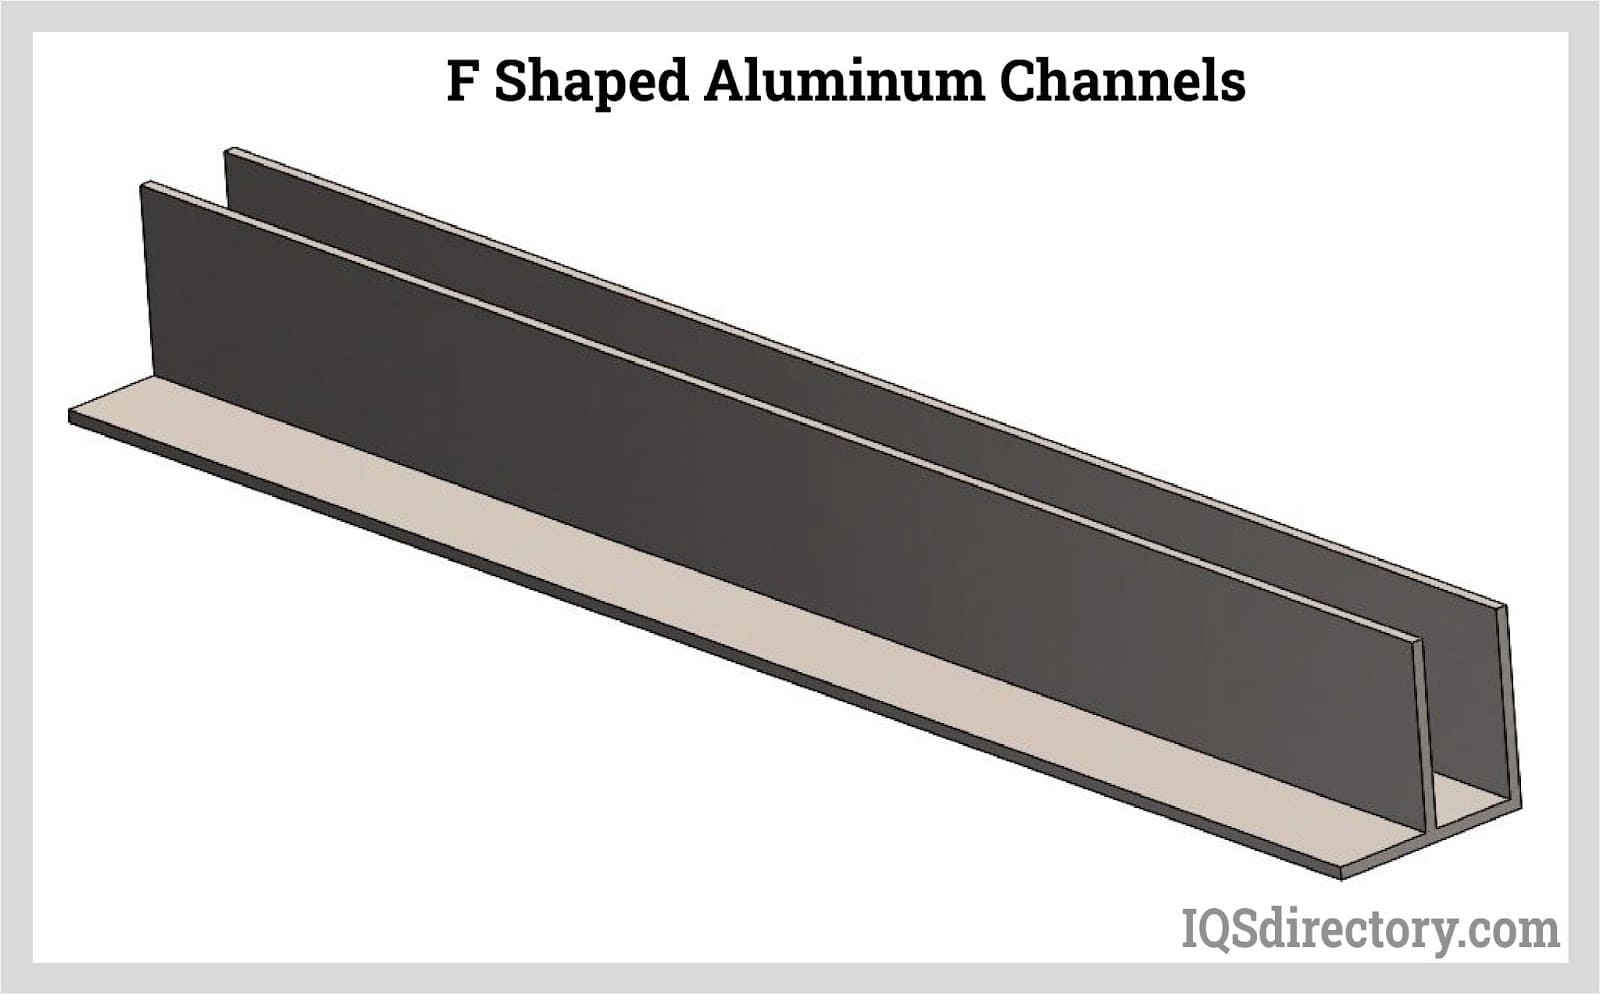 F Shaped Aluminum Channels